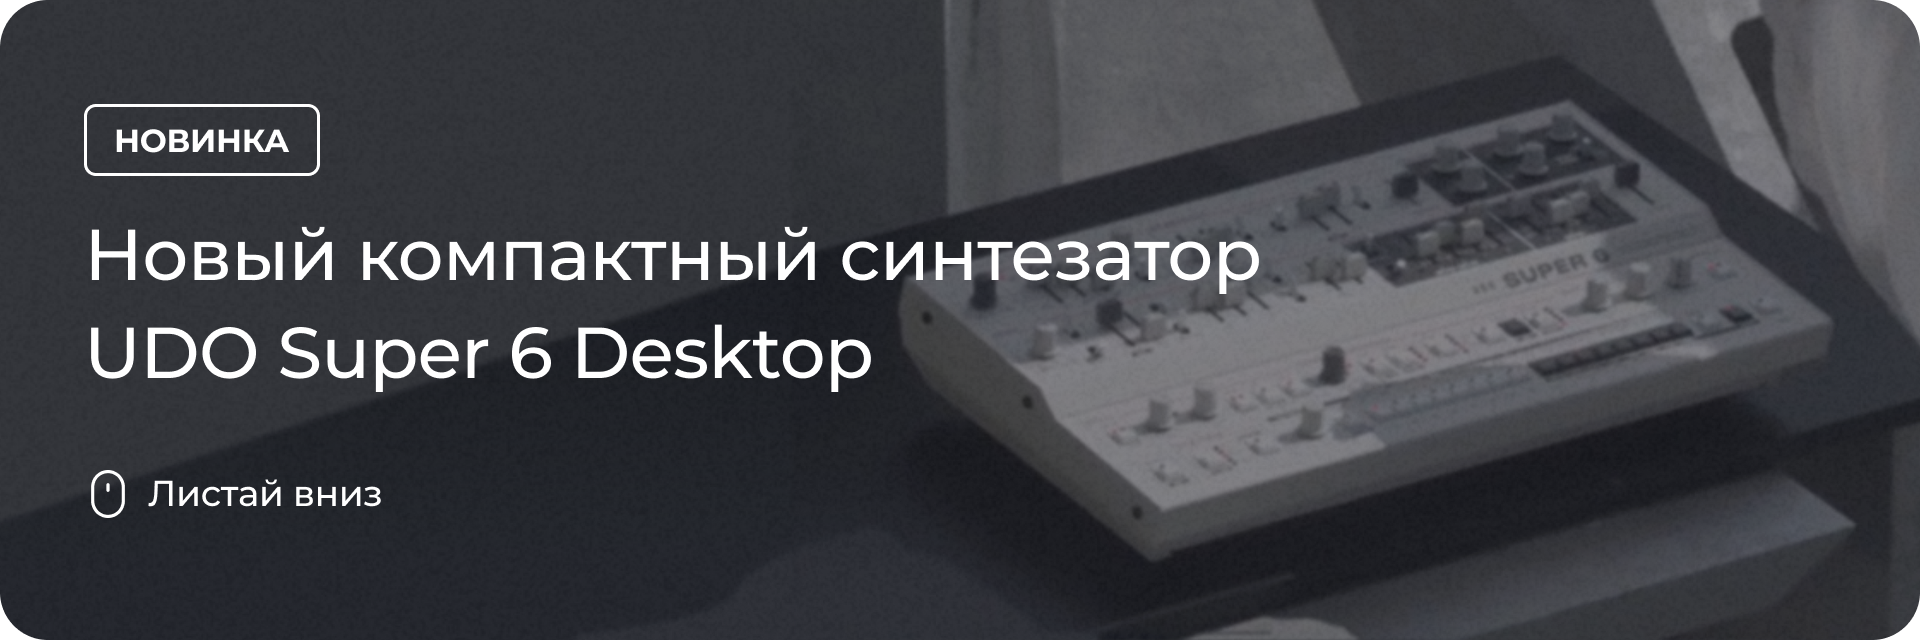 Новый компактный синтезатор UDO Super 6 Desktop